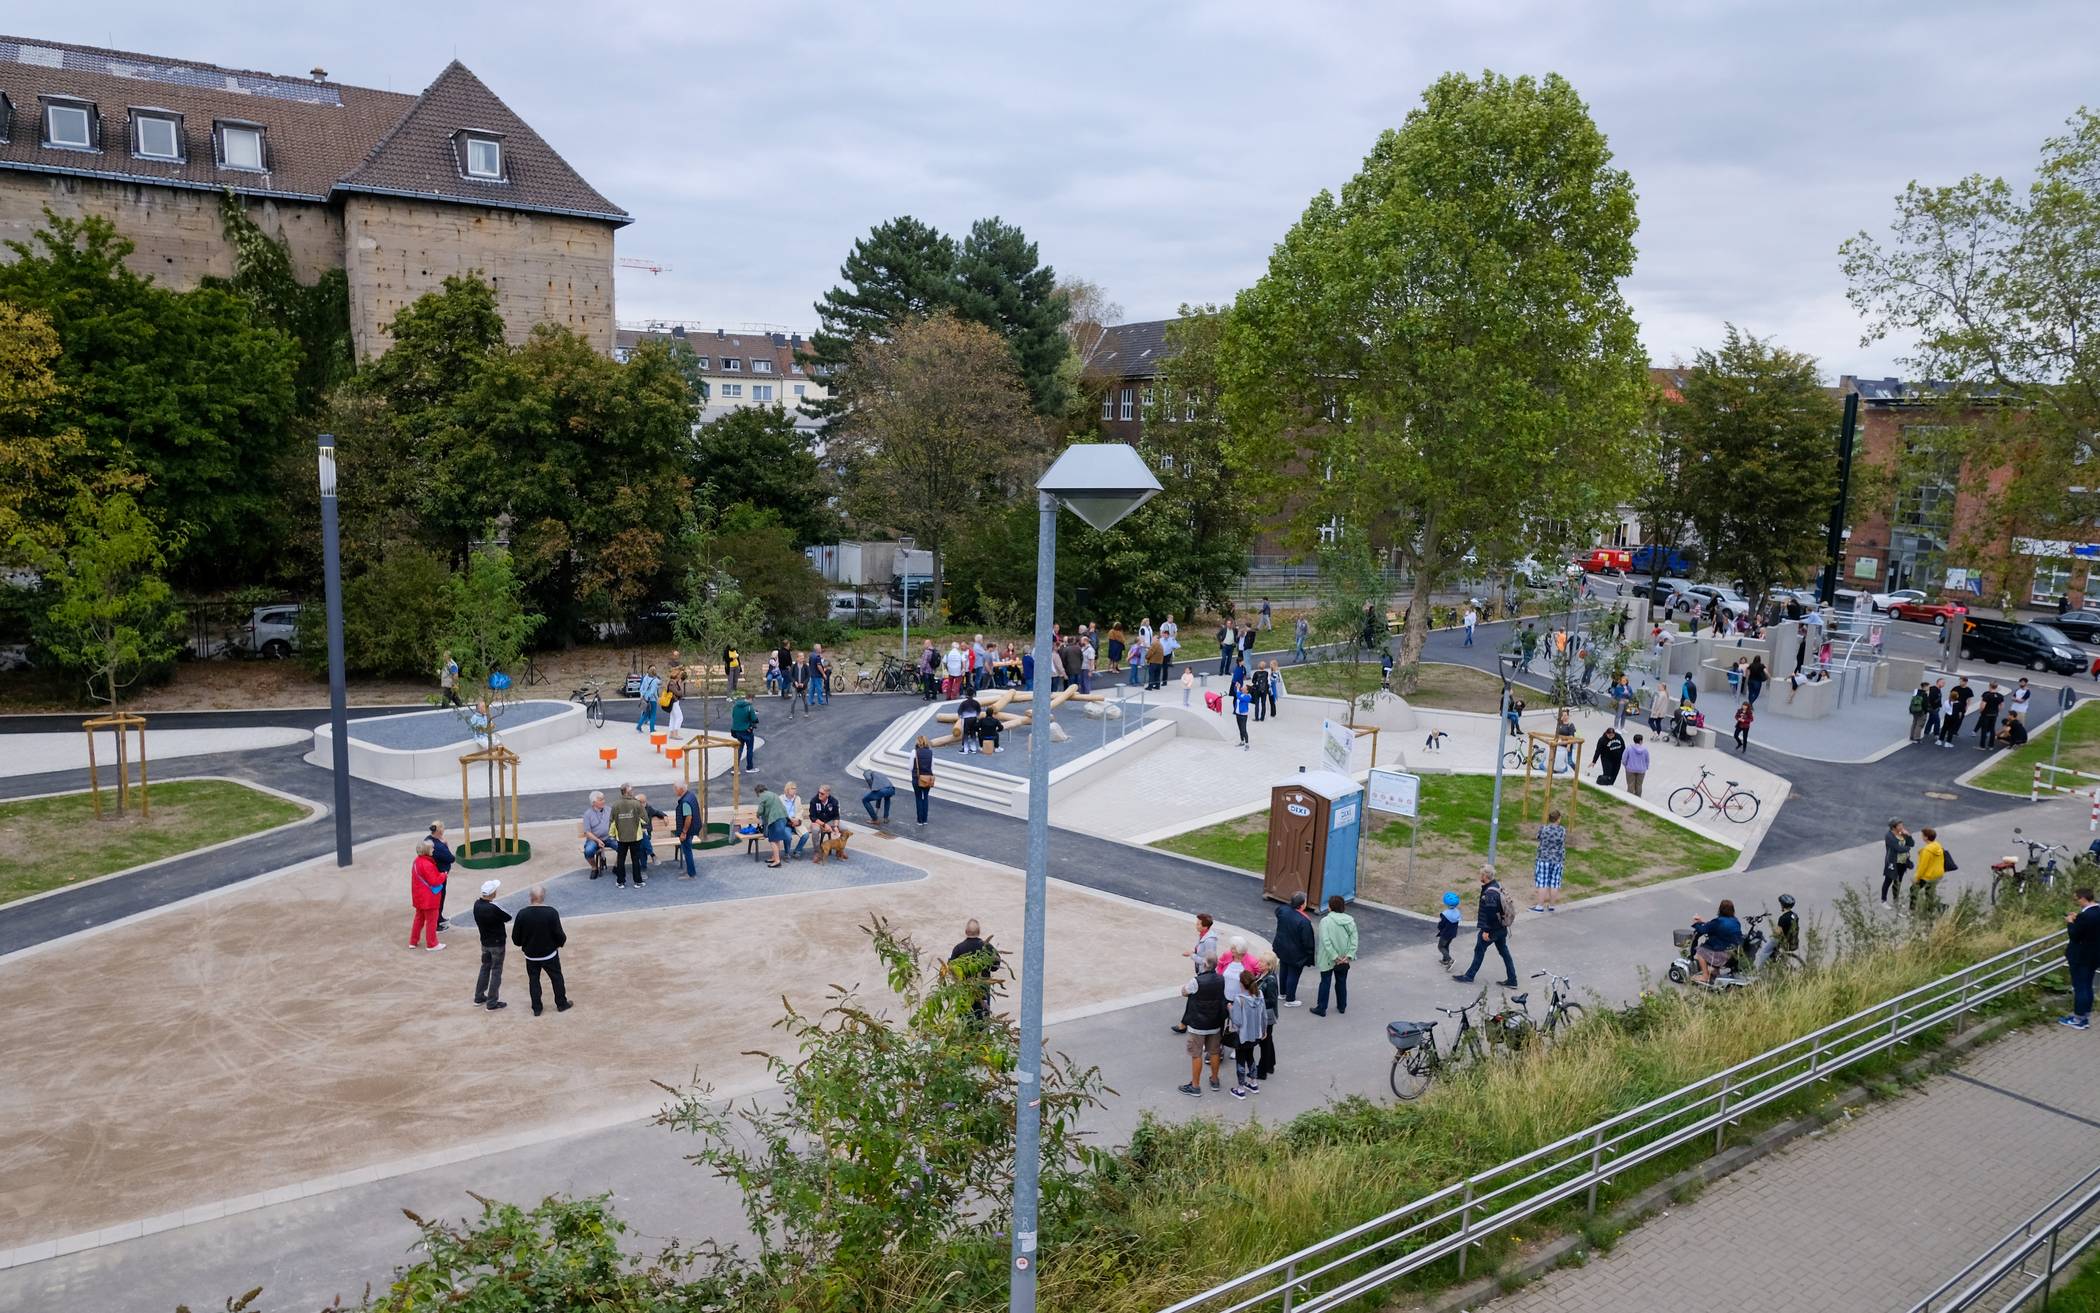  Direkt nach der Eröffnung der Anlage durch Bürgermeister Friedrich G. Conzen tobten sich die Kinder und Jugendlichen im neuen "Sportpark am Bunker" in Rath aus. 